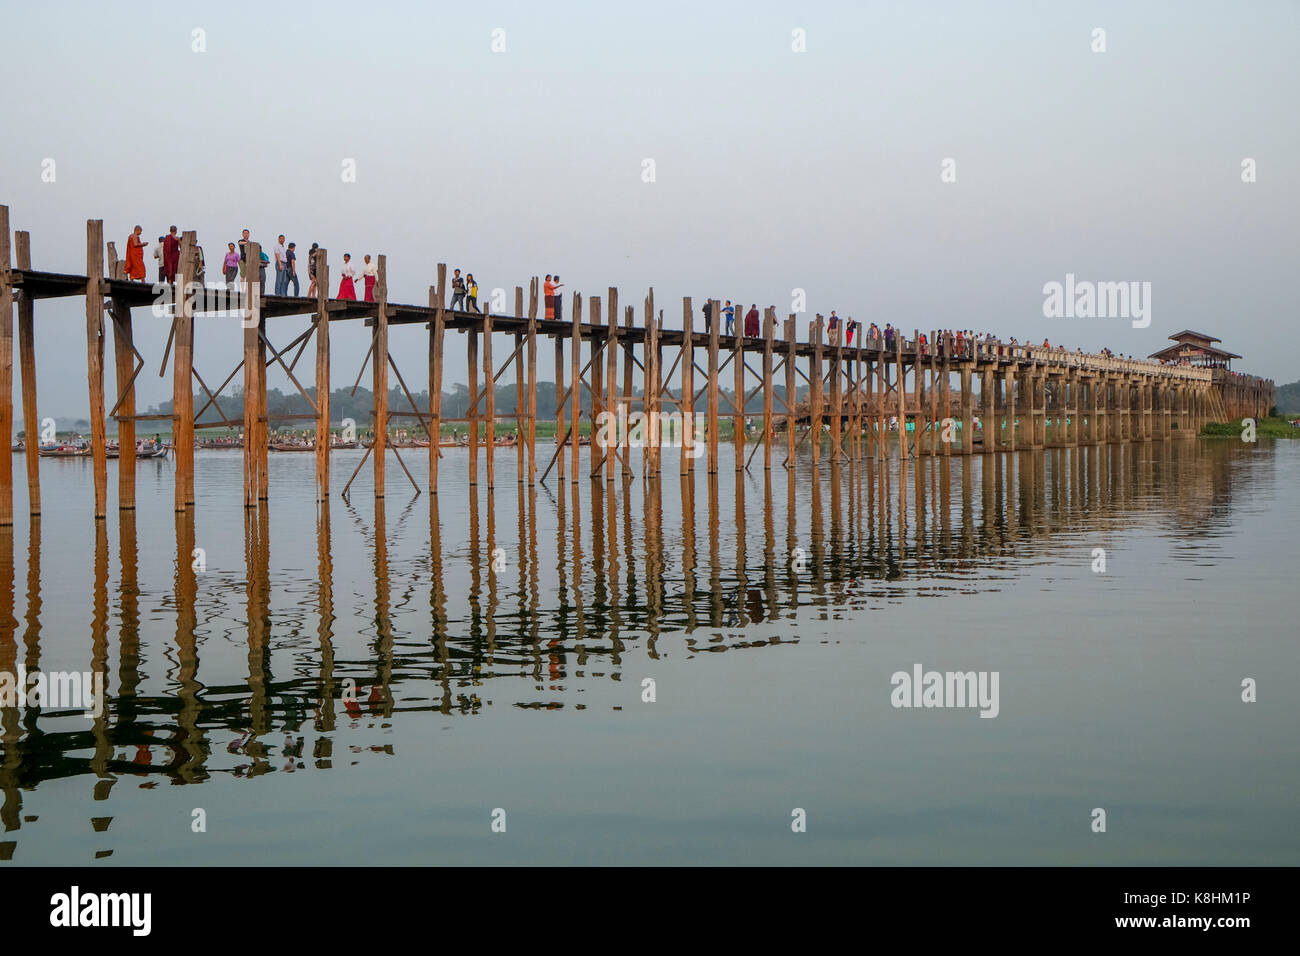 La birmania, myanmar, Amarapura: i passanti sulla U Bein ponte che attraversa il lago Taungthaman Foto Stock